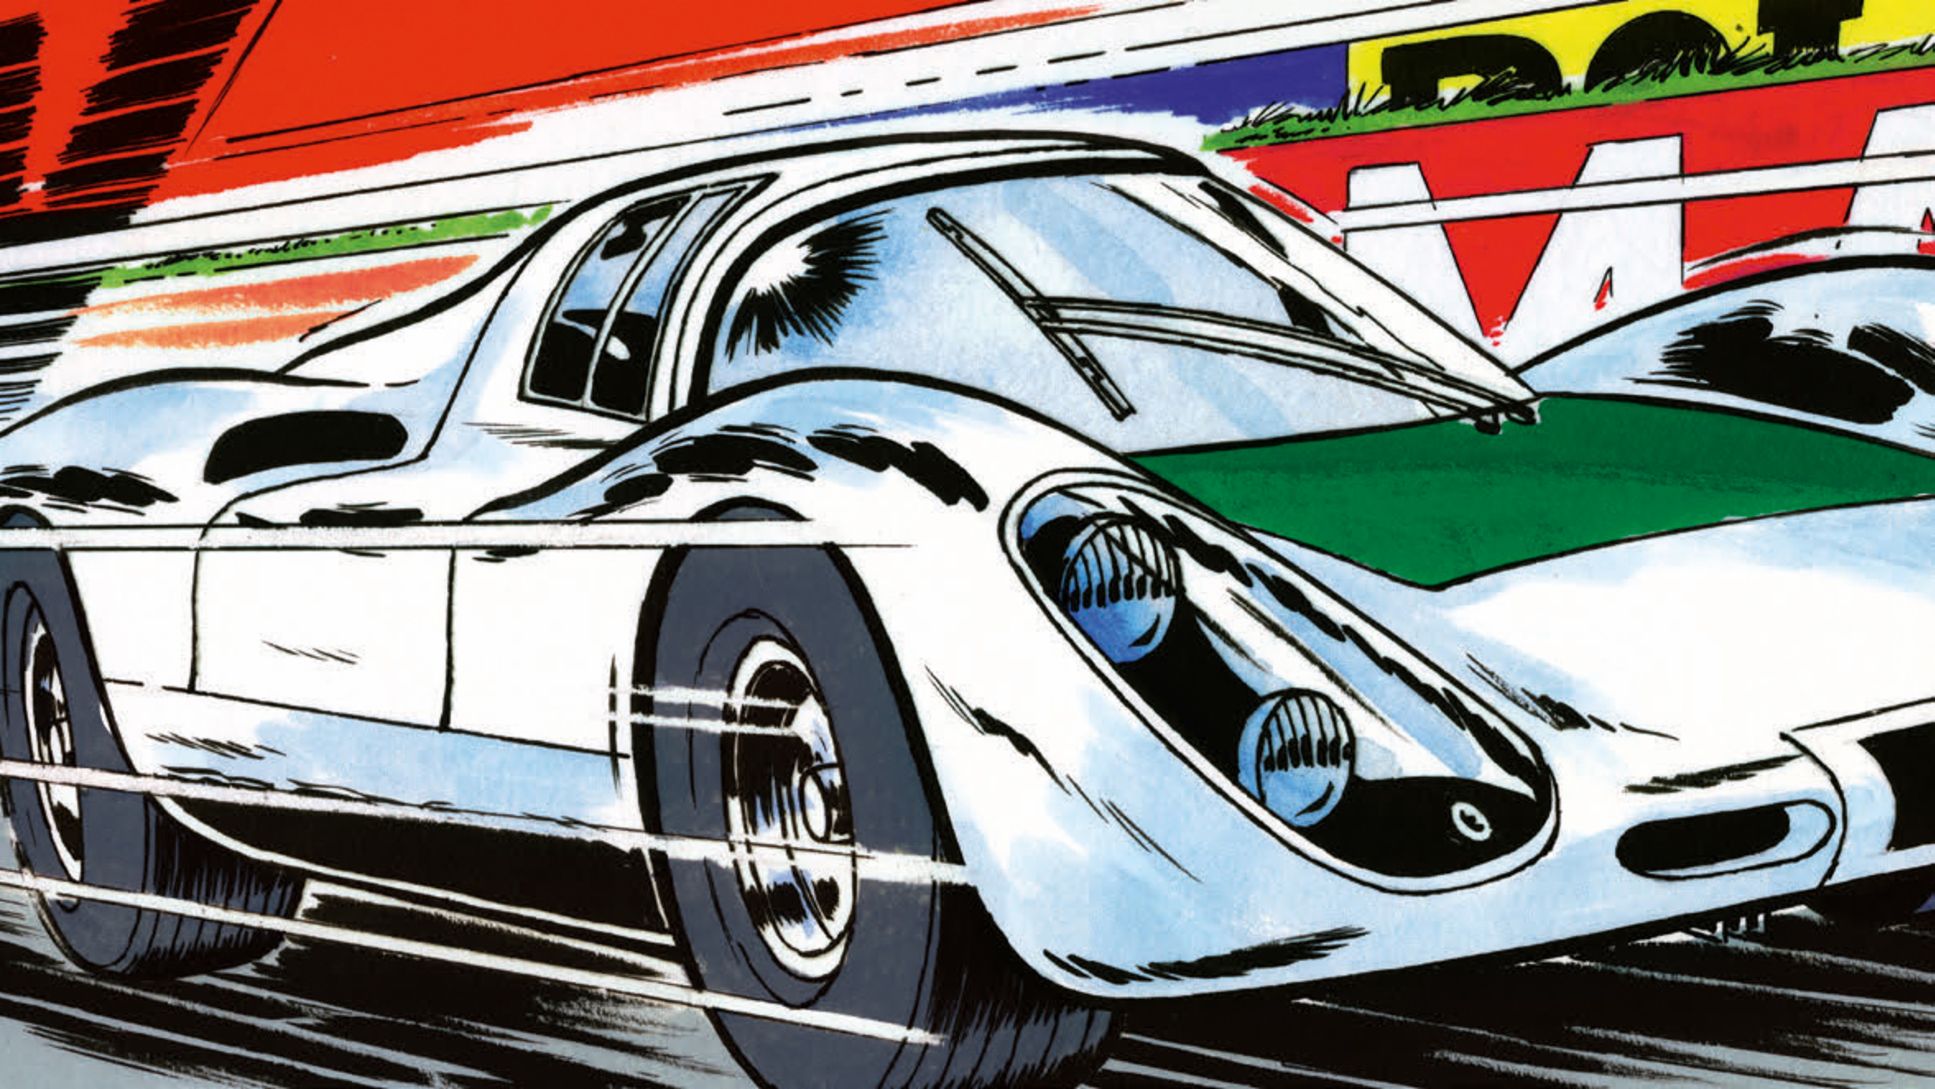 Michel Vaillant comic, 2020, Porsche AG